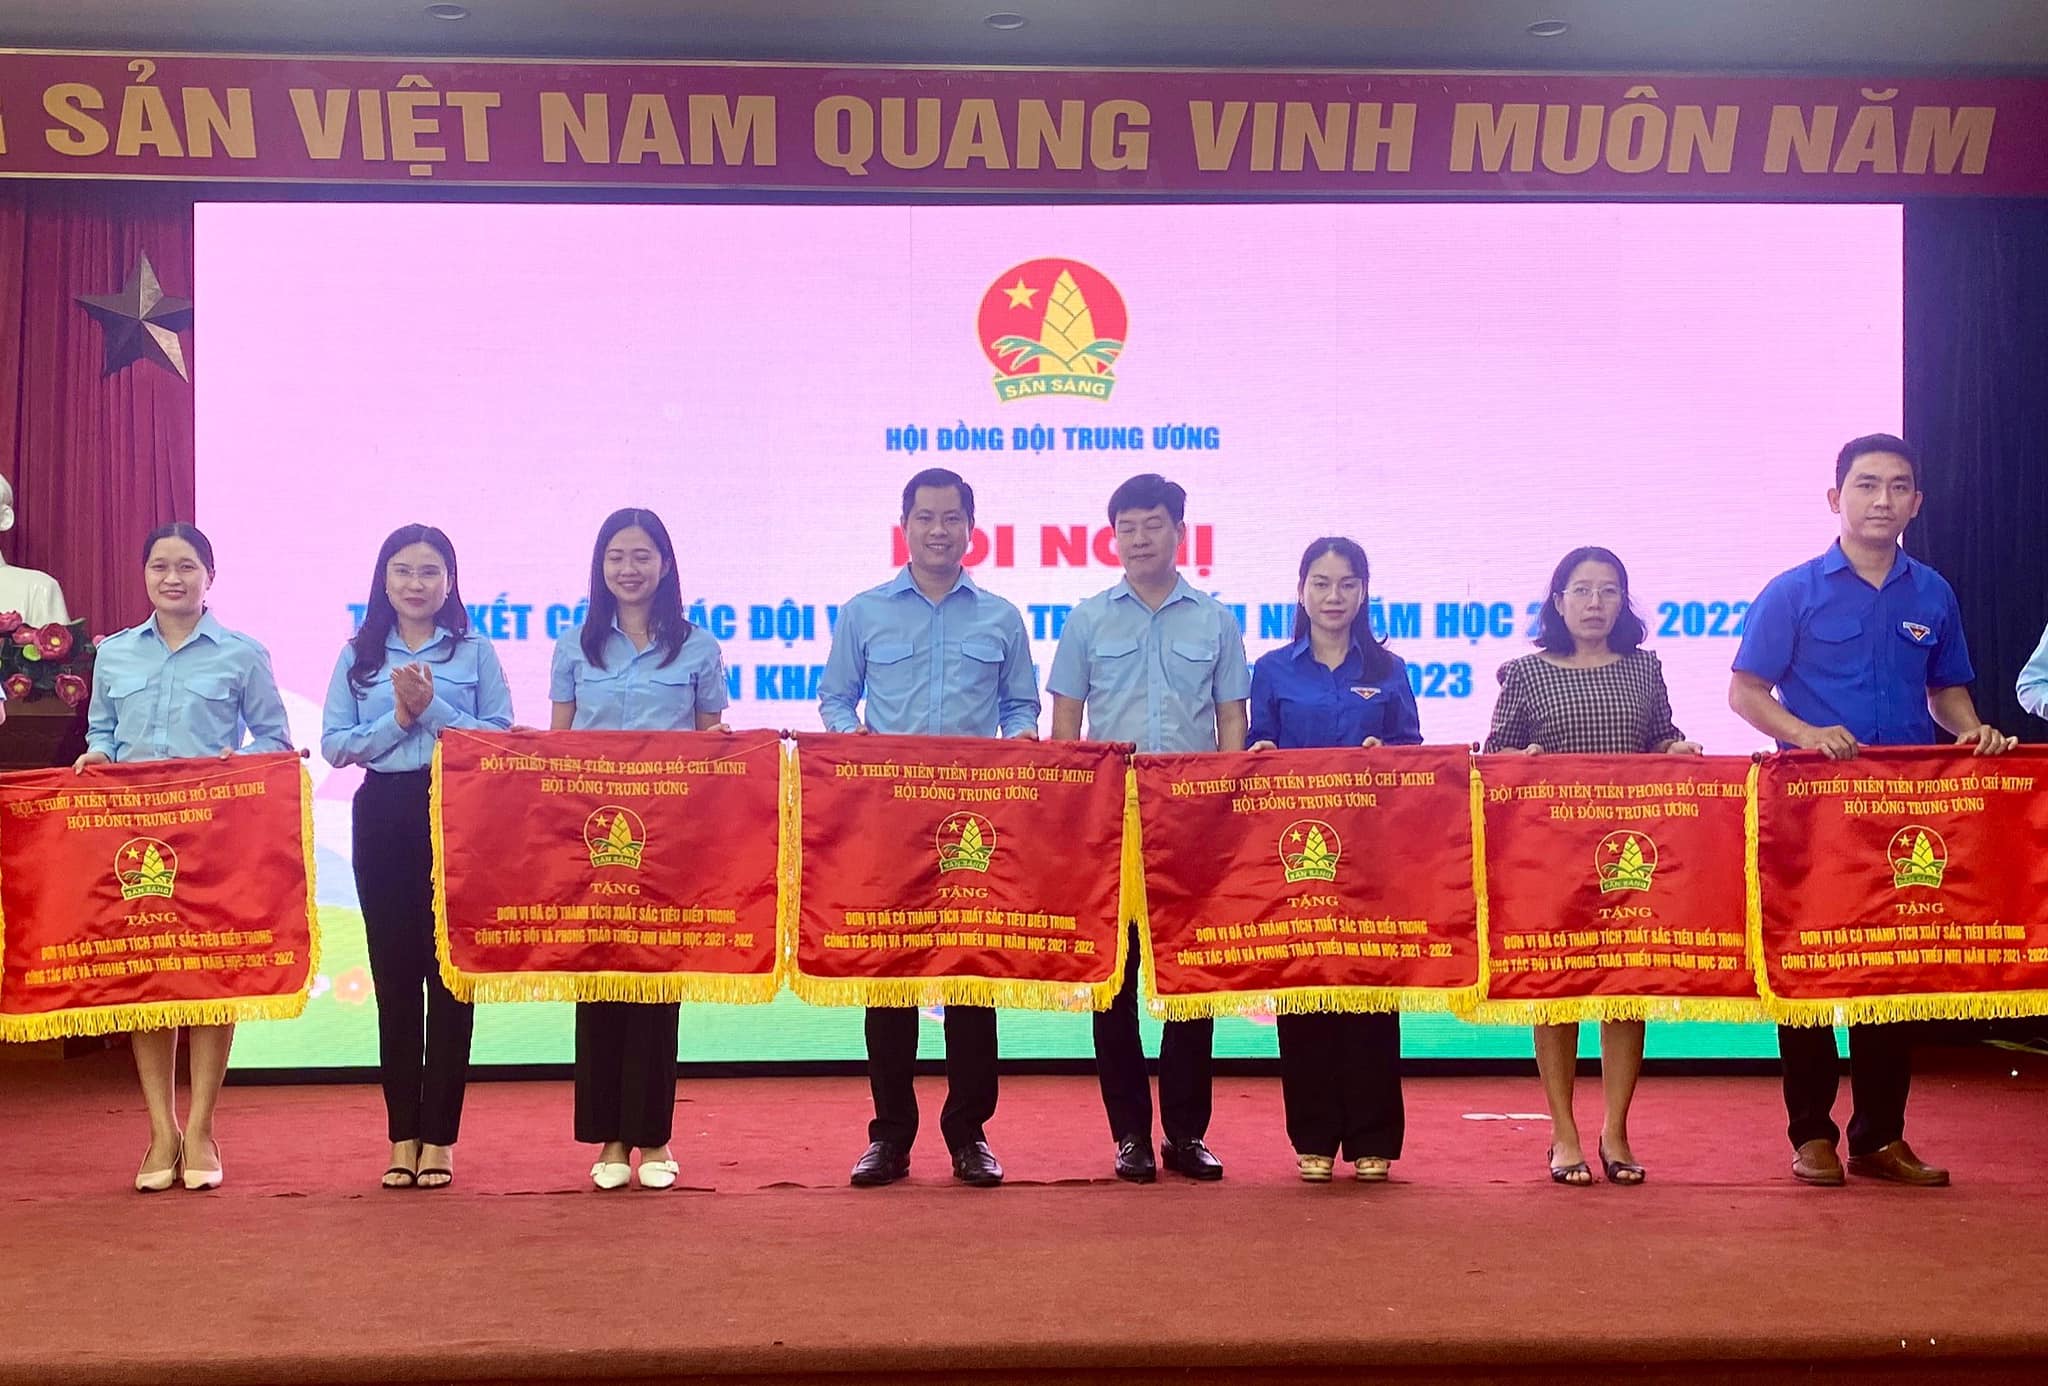 Hội đồng Đội tỉnh Tuyên Quang vinh dự nhận Bằng khen của Trung ương Đoàn và Cờ thi đua của Hội đồng Đội Trung ương